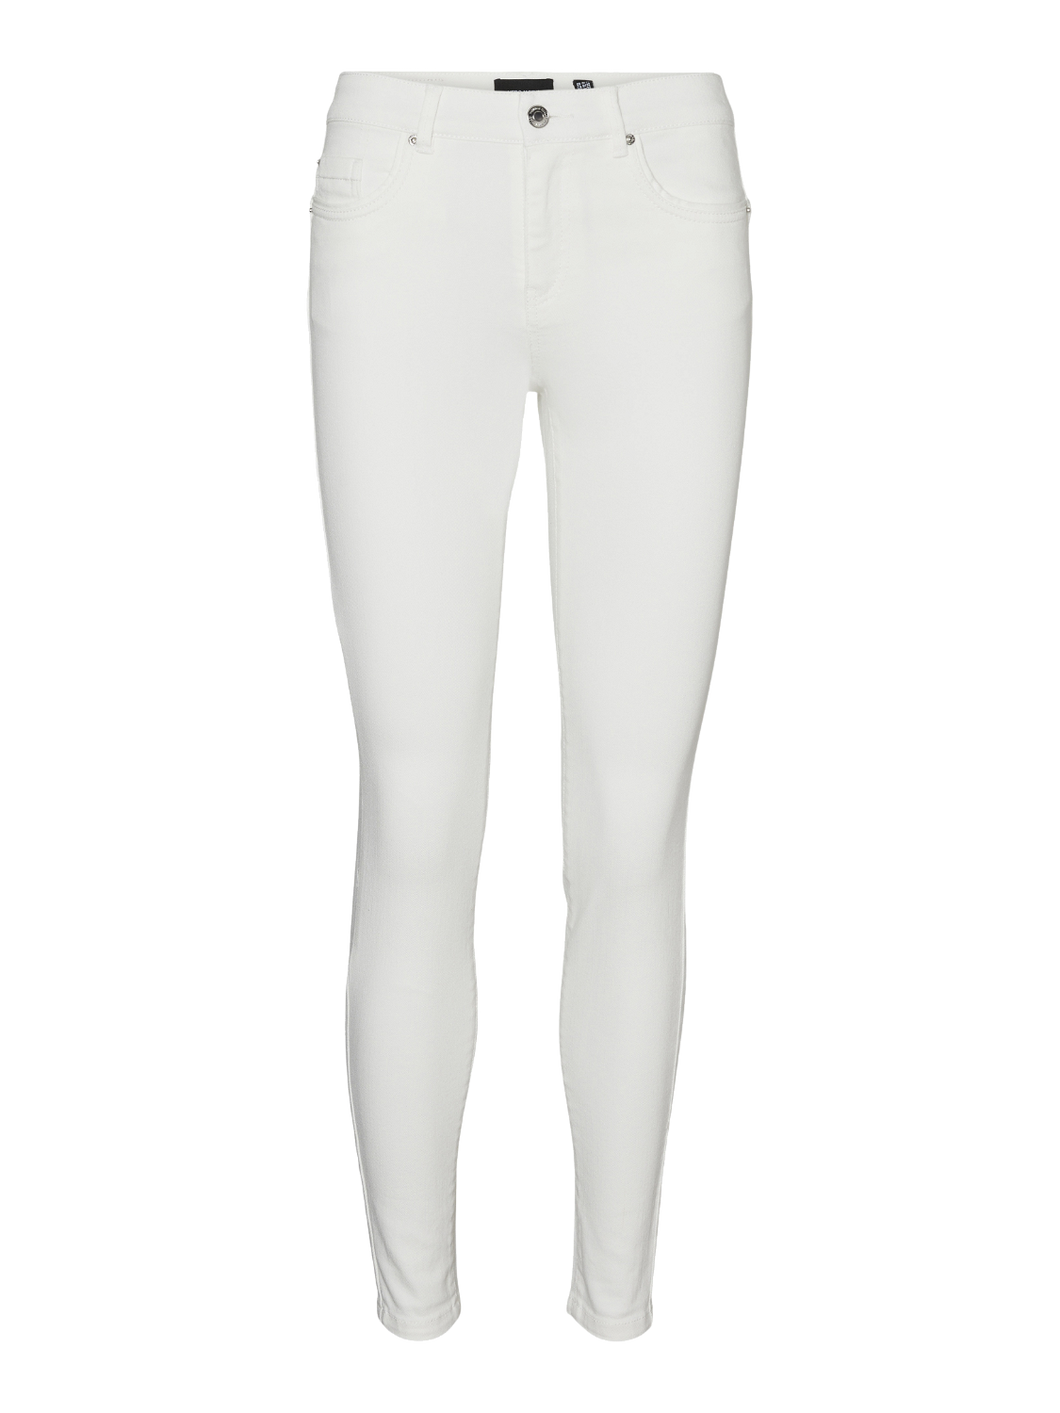 VMALIA Jeans - Bright White